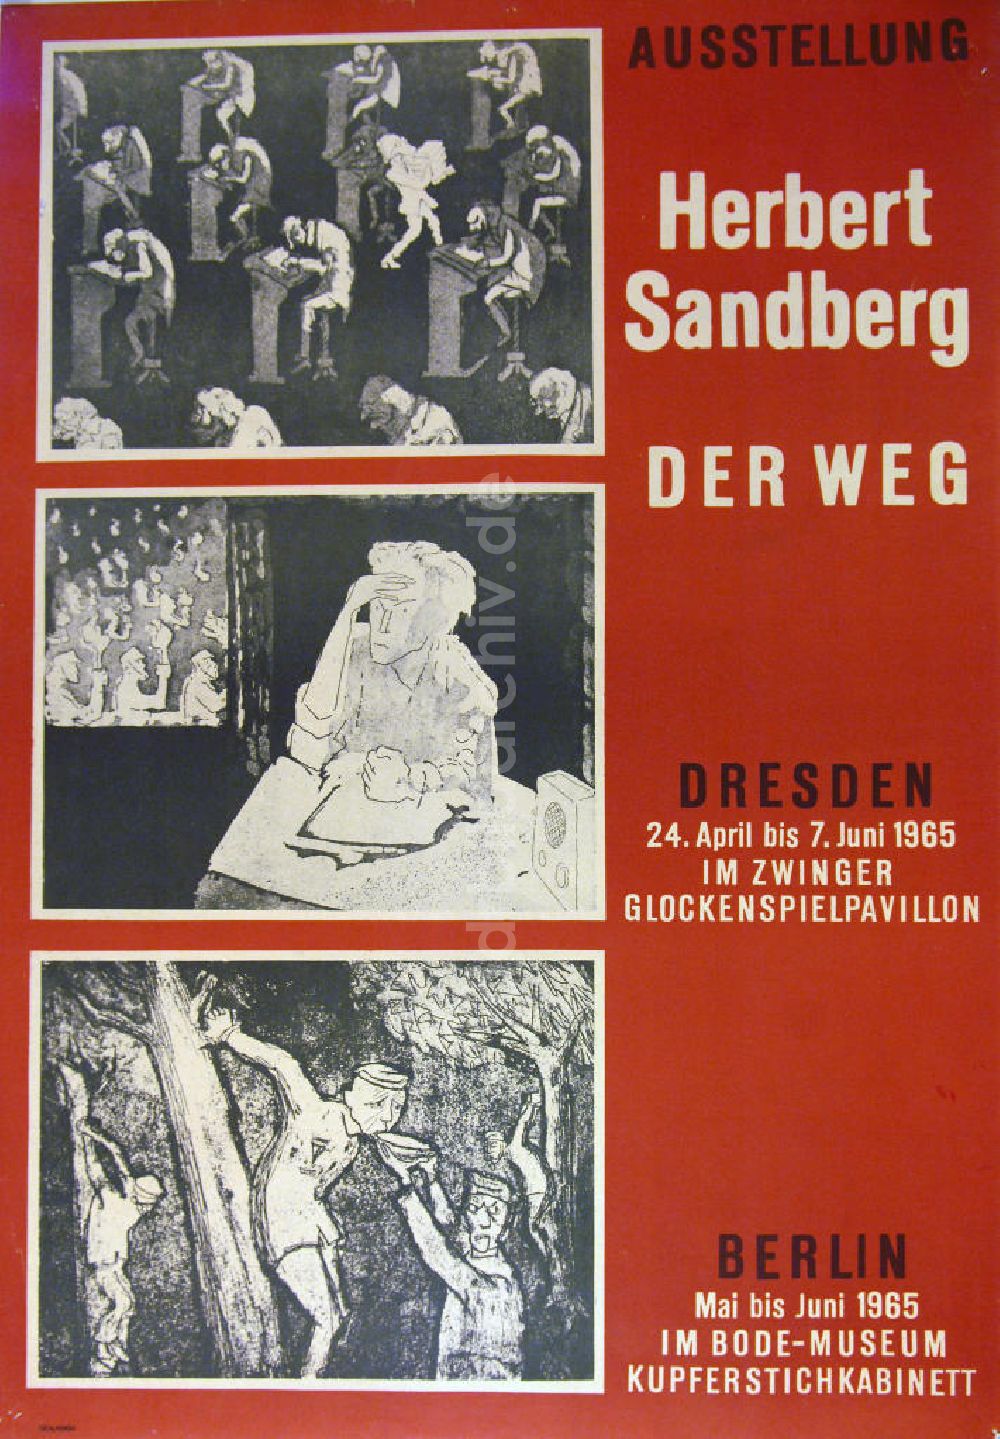 Berlin: Plakat von der Ausstellung Der Weg über Herbert Sandberg aus dem Jahr 1965